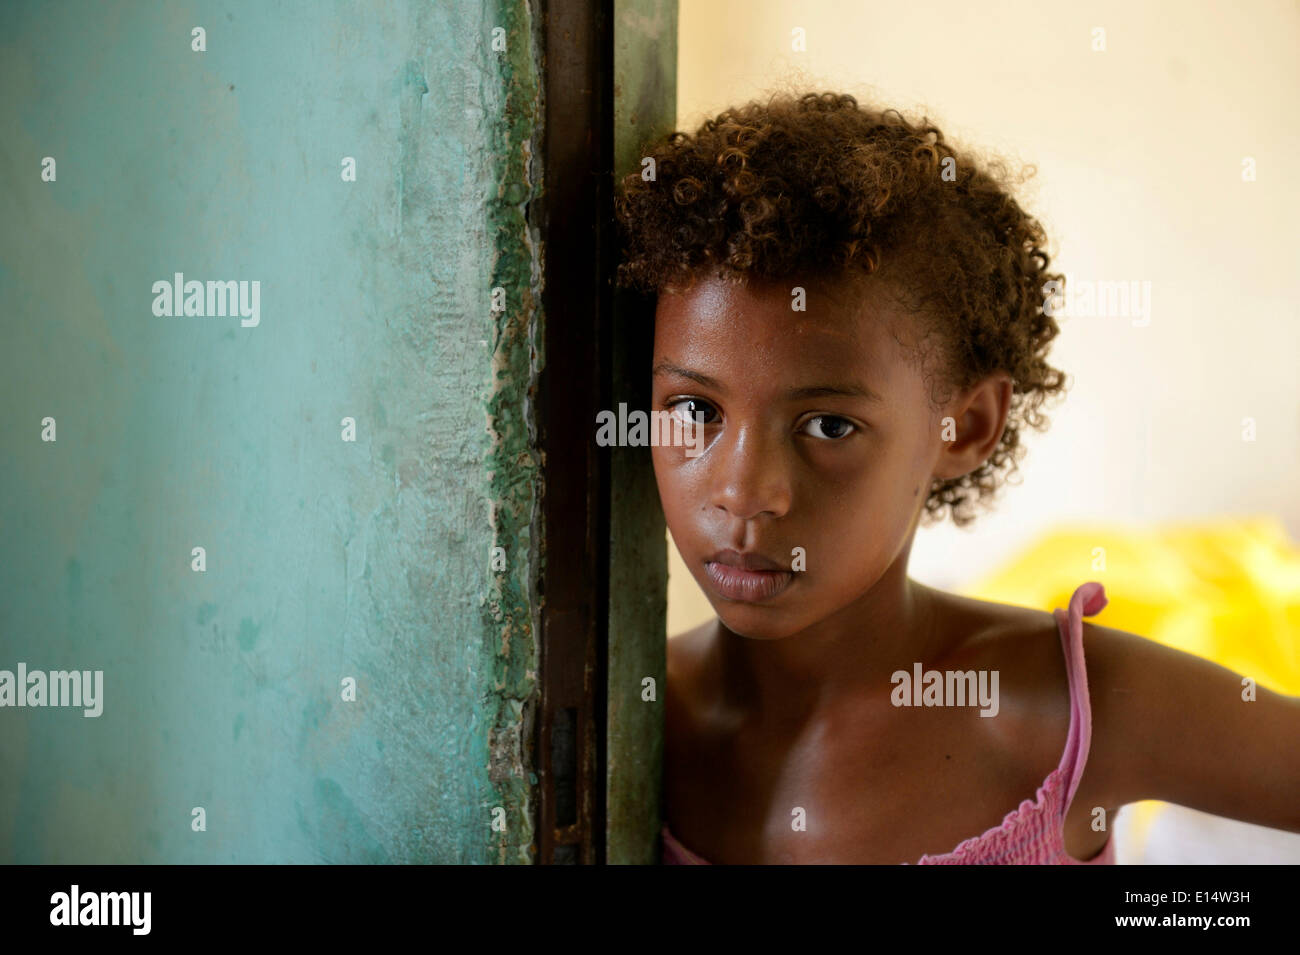 Chica, 10, grave expresión, Senador Camara favela, Rio de Janeiro, Rio de Janeiro, Brasil Foto de stock